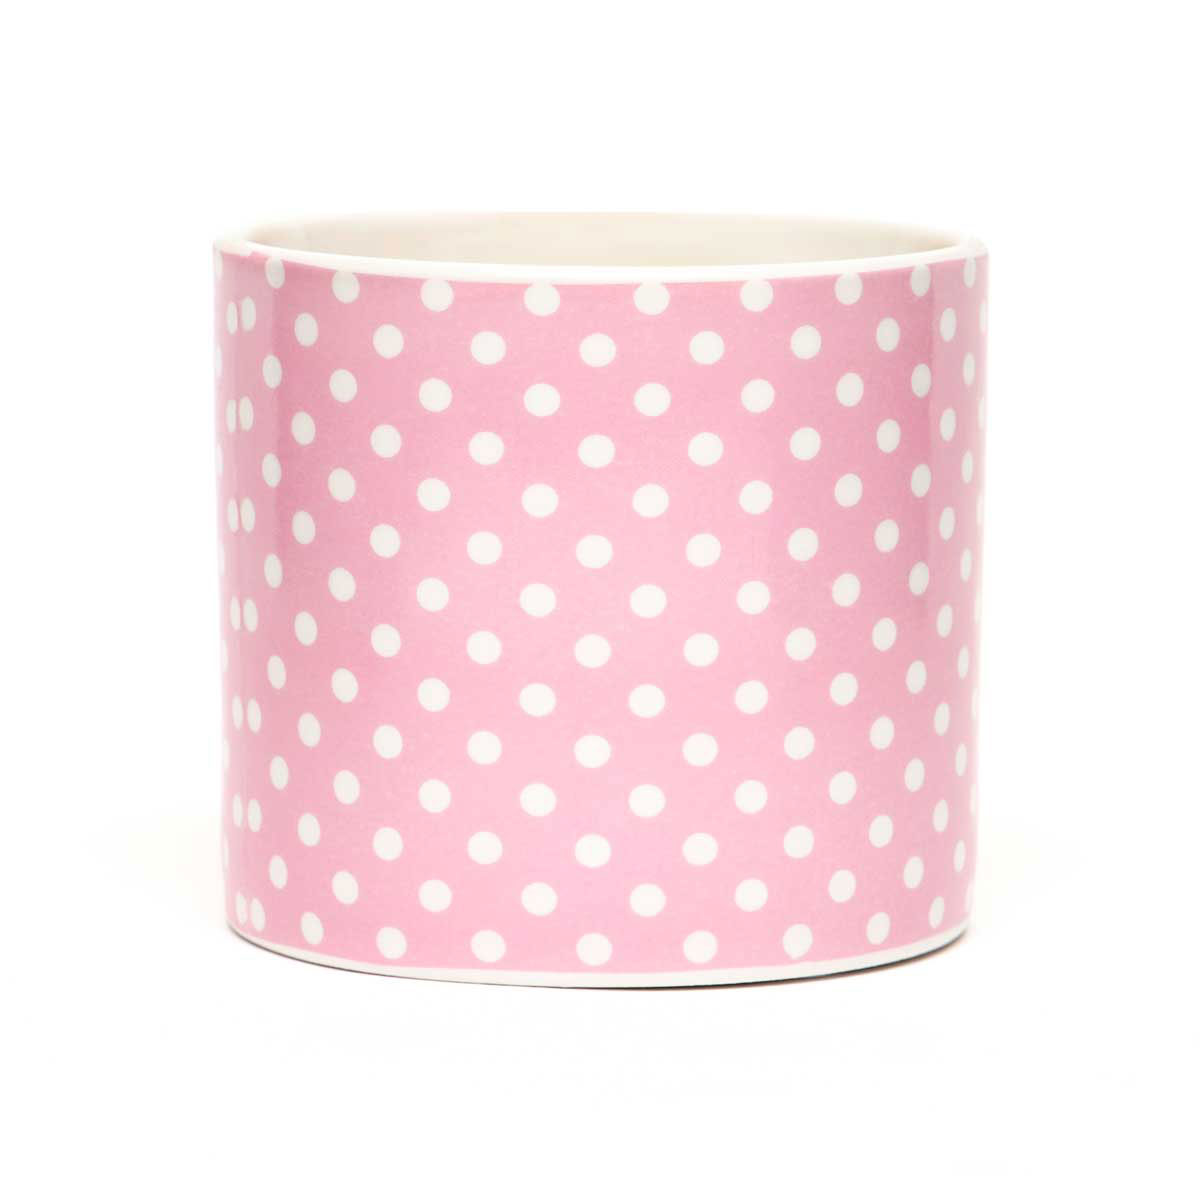 !Think Pink Pindot Porcelain Pot Pink/White Medium